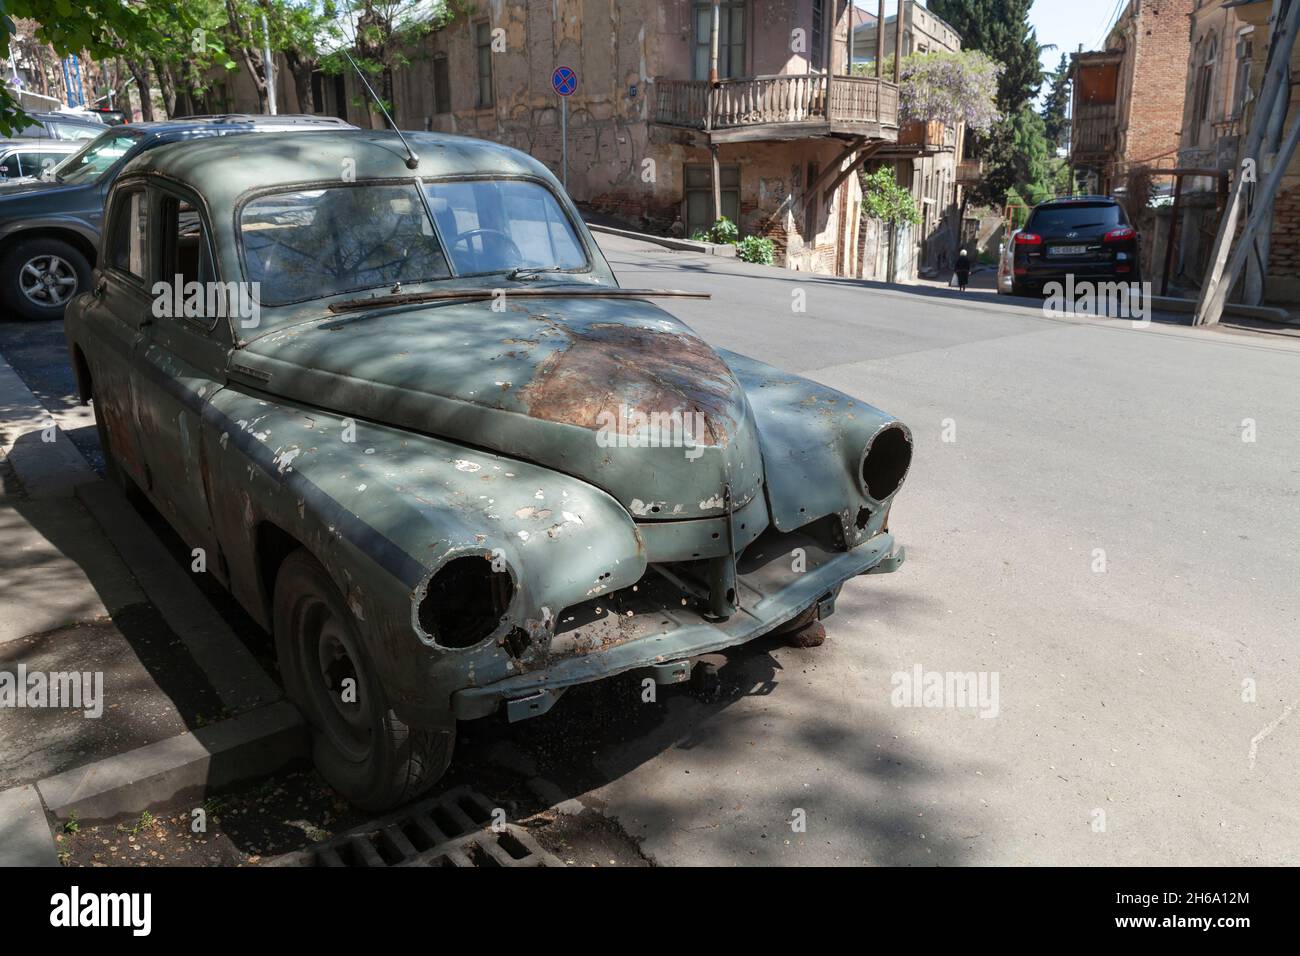 Tbilisi, Georgia - 3 maggio 2019: Abbandonata arrugginita vecchia auto a timer si trova parcheggiata sulla strada della vecchia Tbilisi. GAZ-M20 Pobeda, era un'automobile prodotta Foto Stock